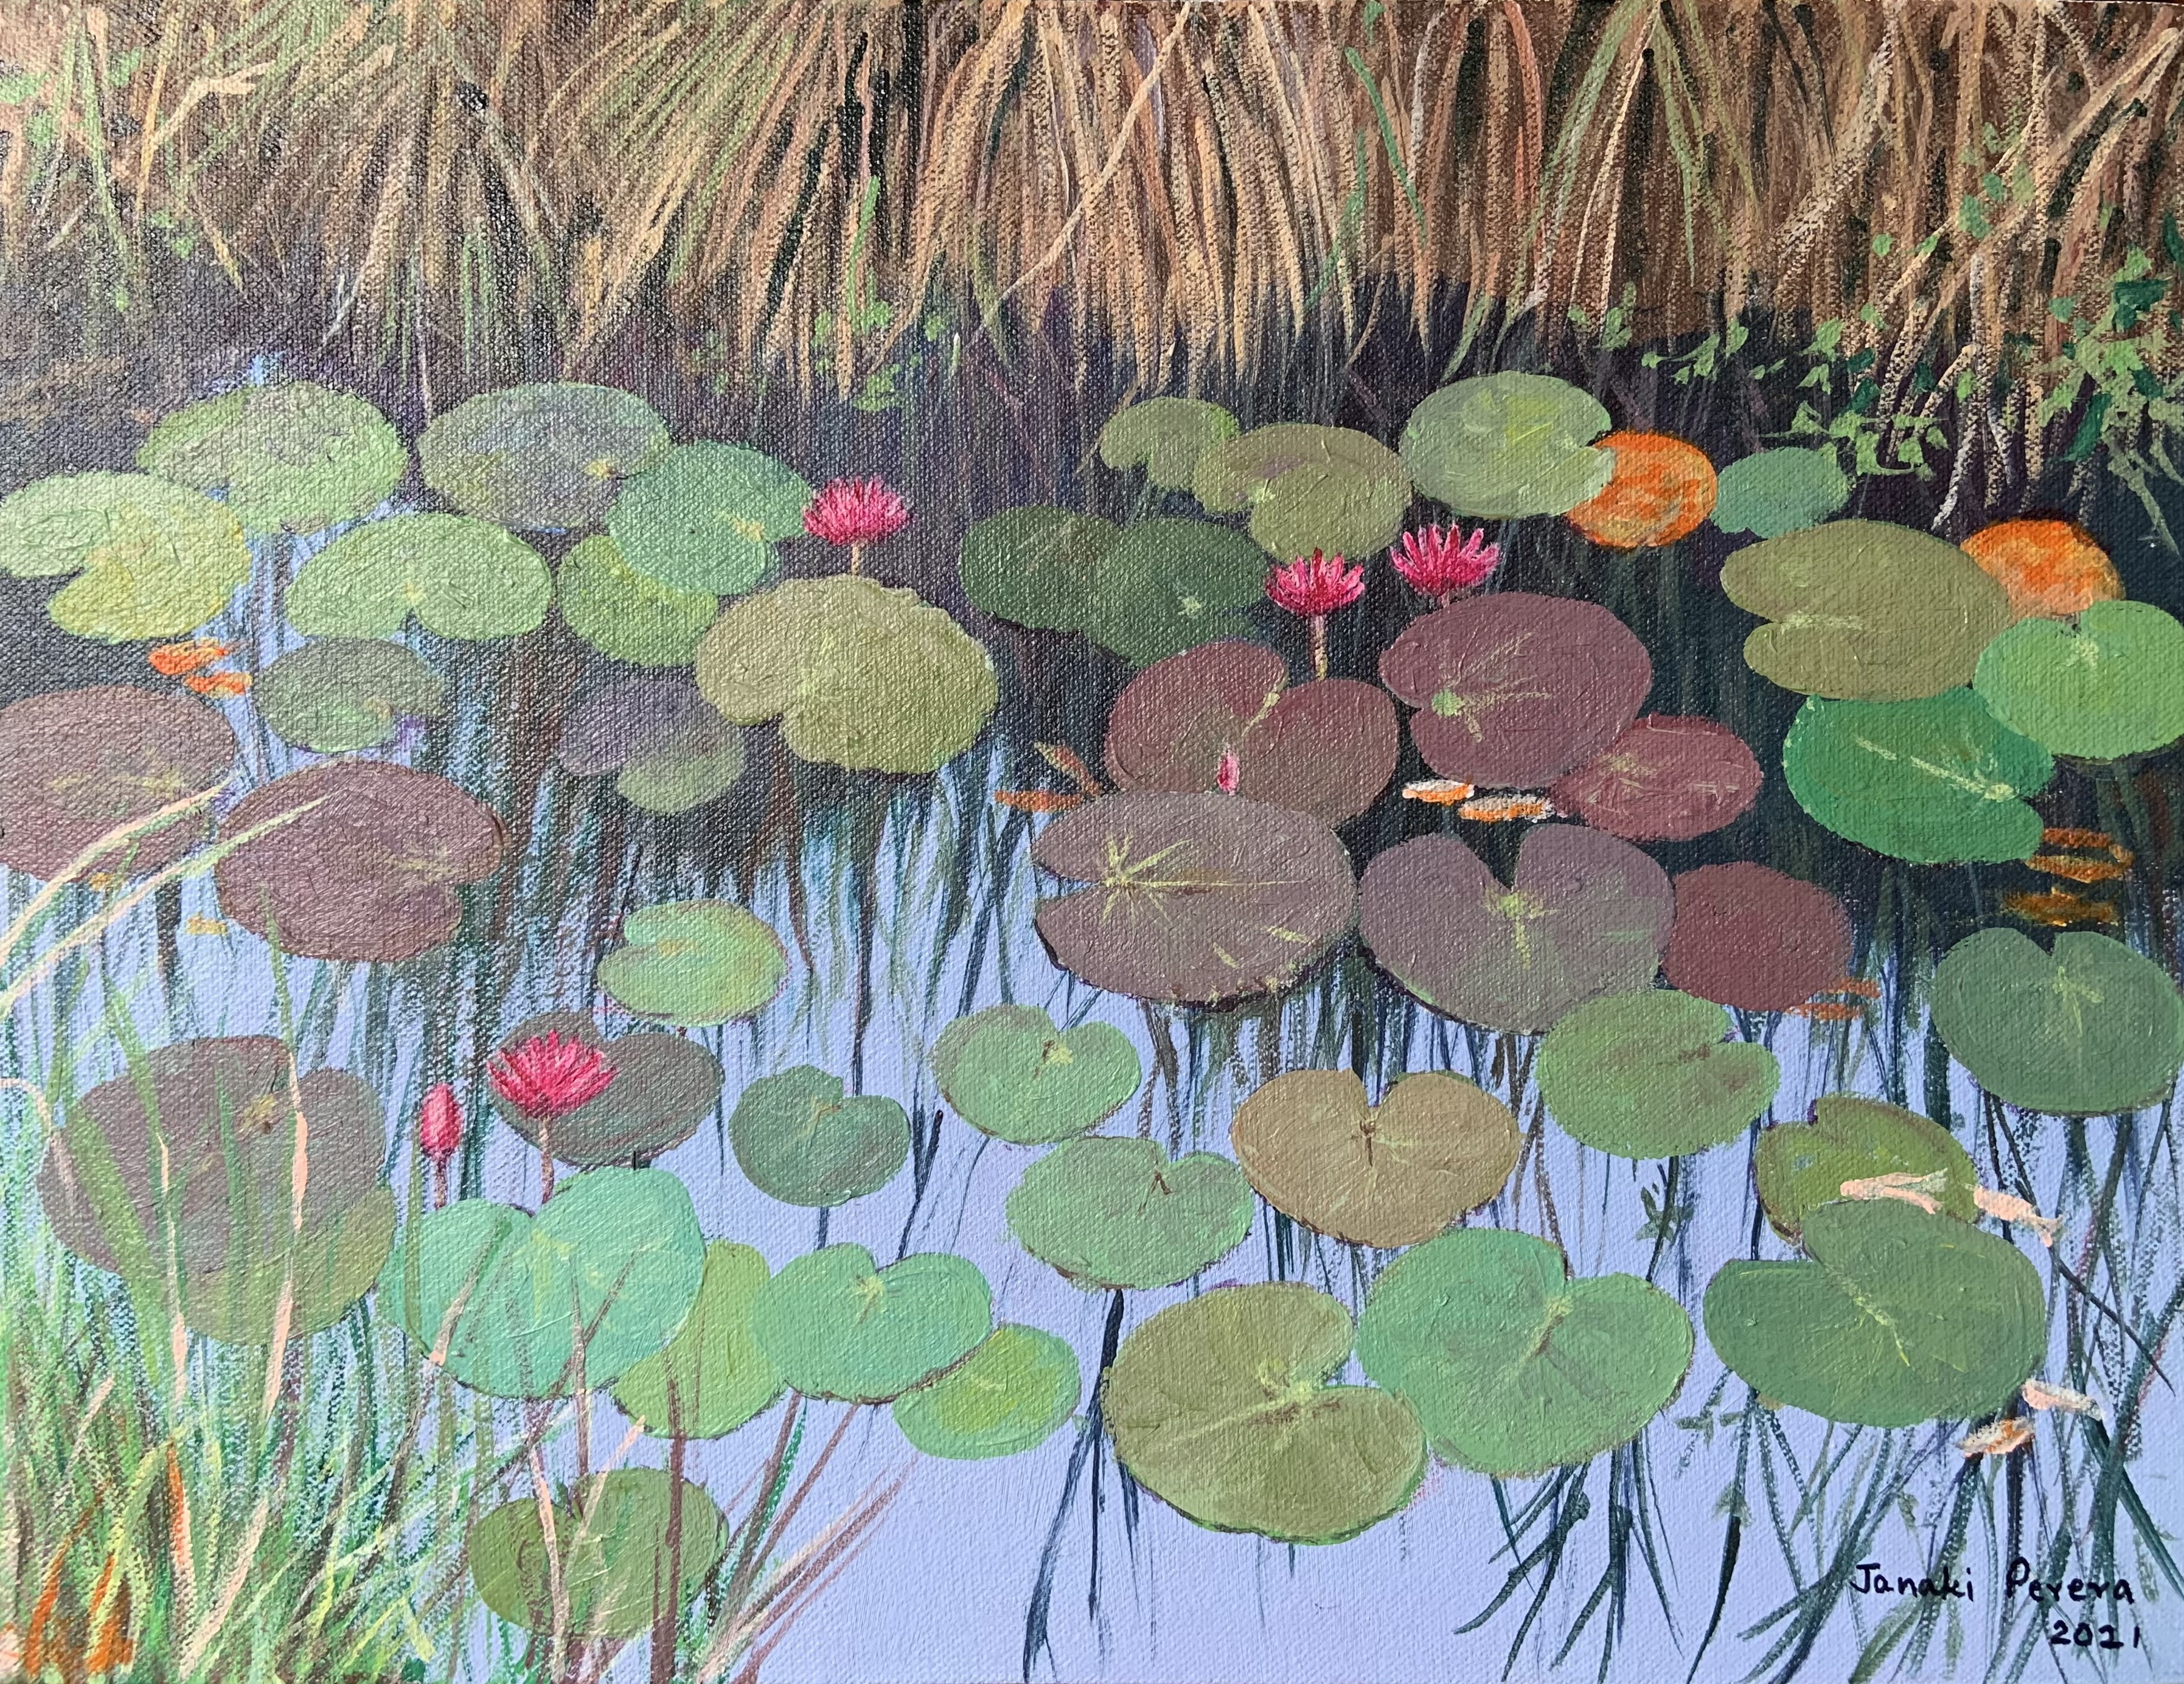 Lotus Pond by Janaki Perera